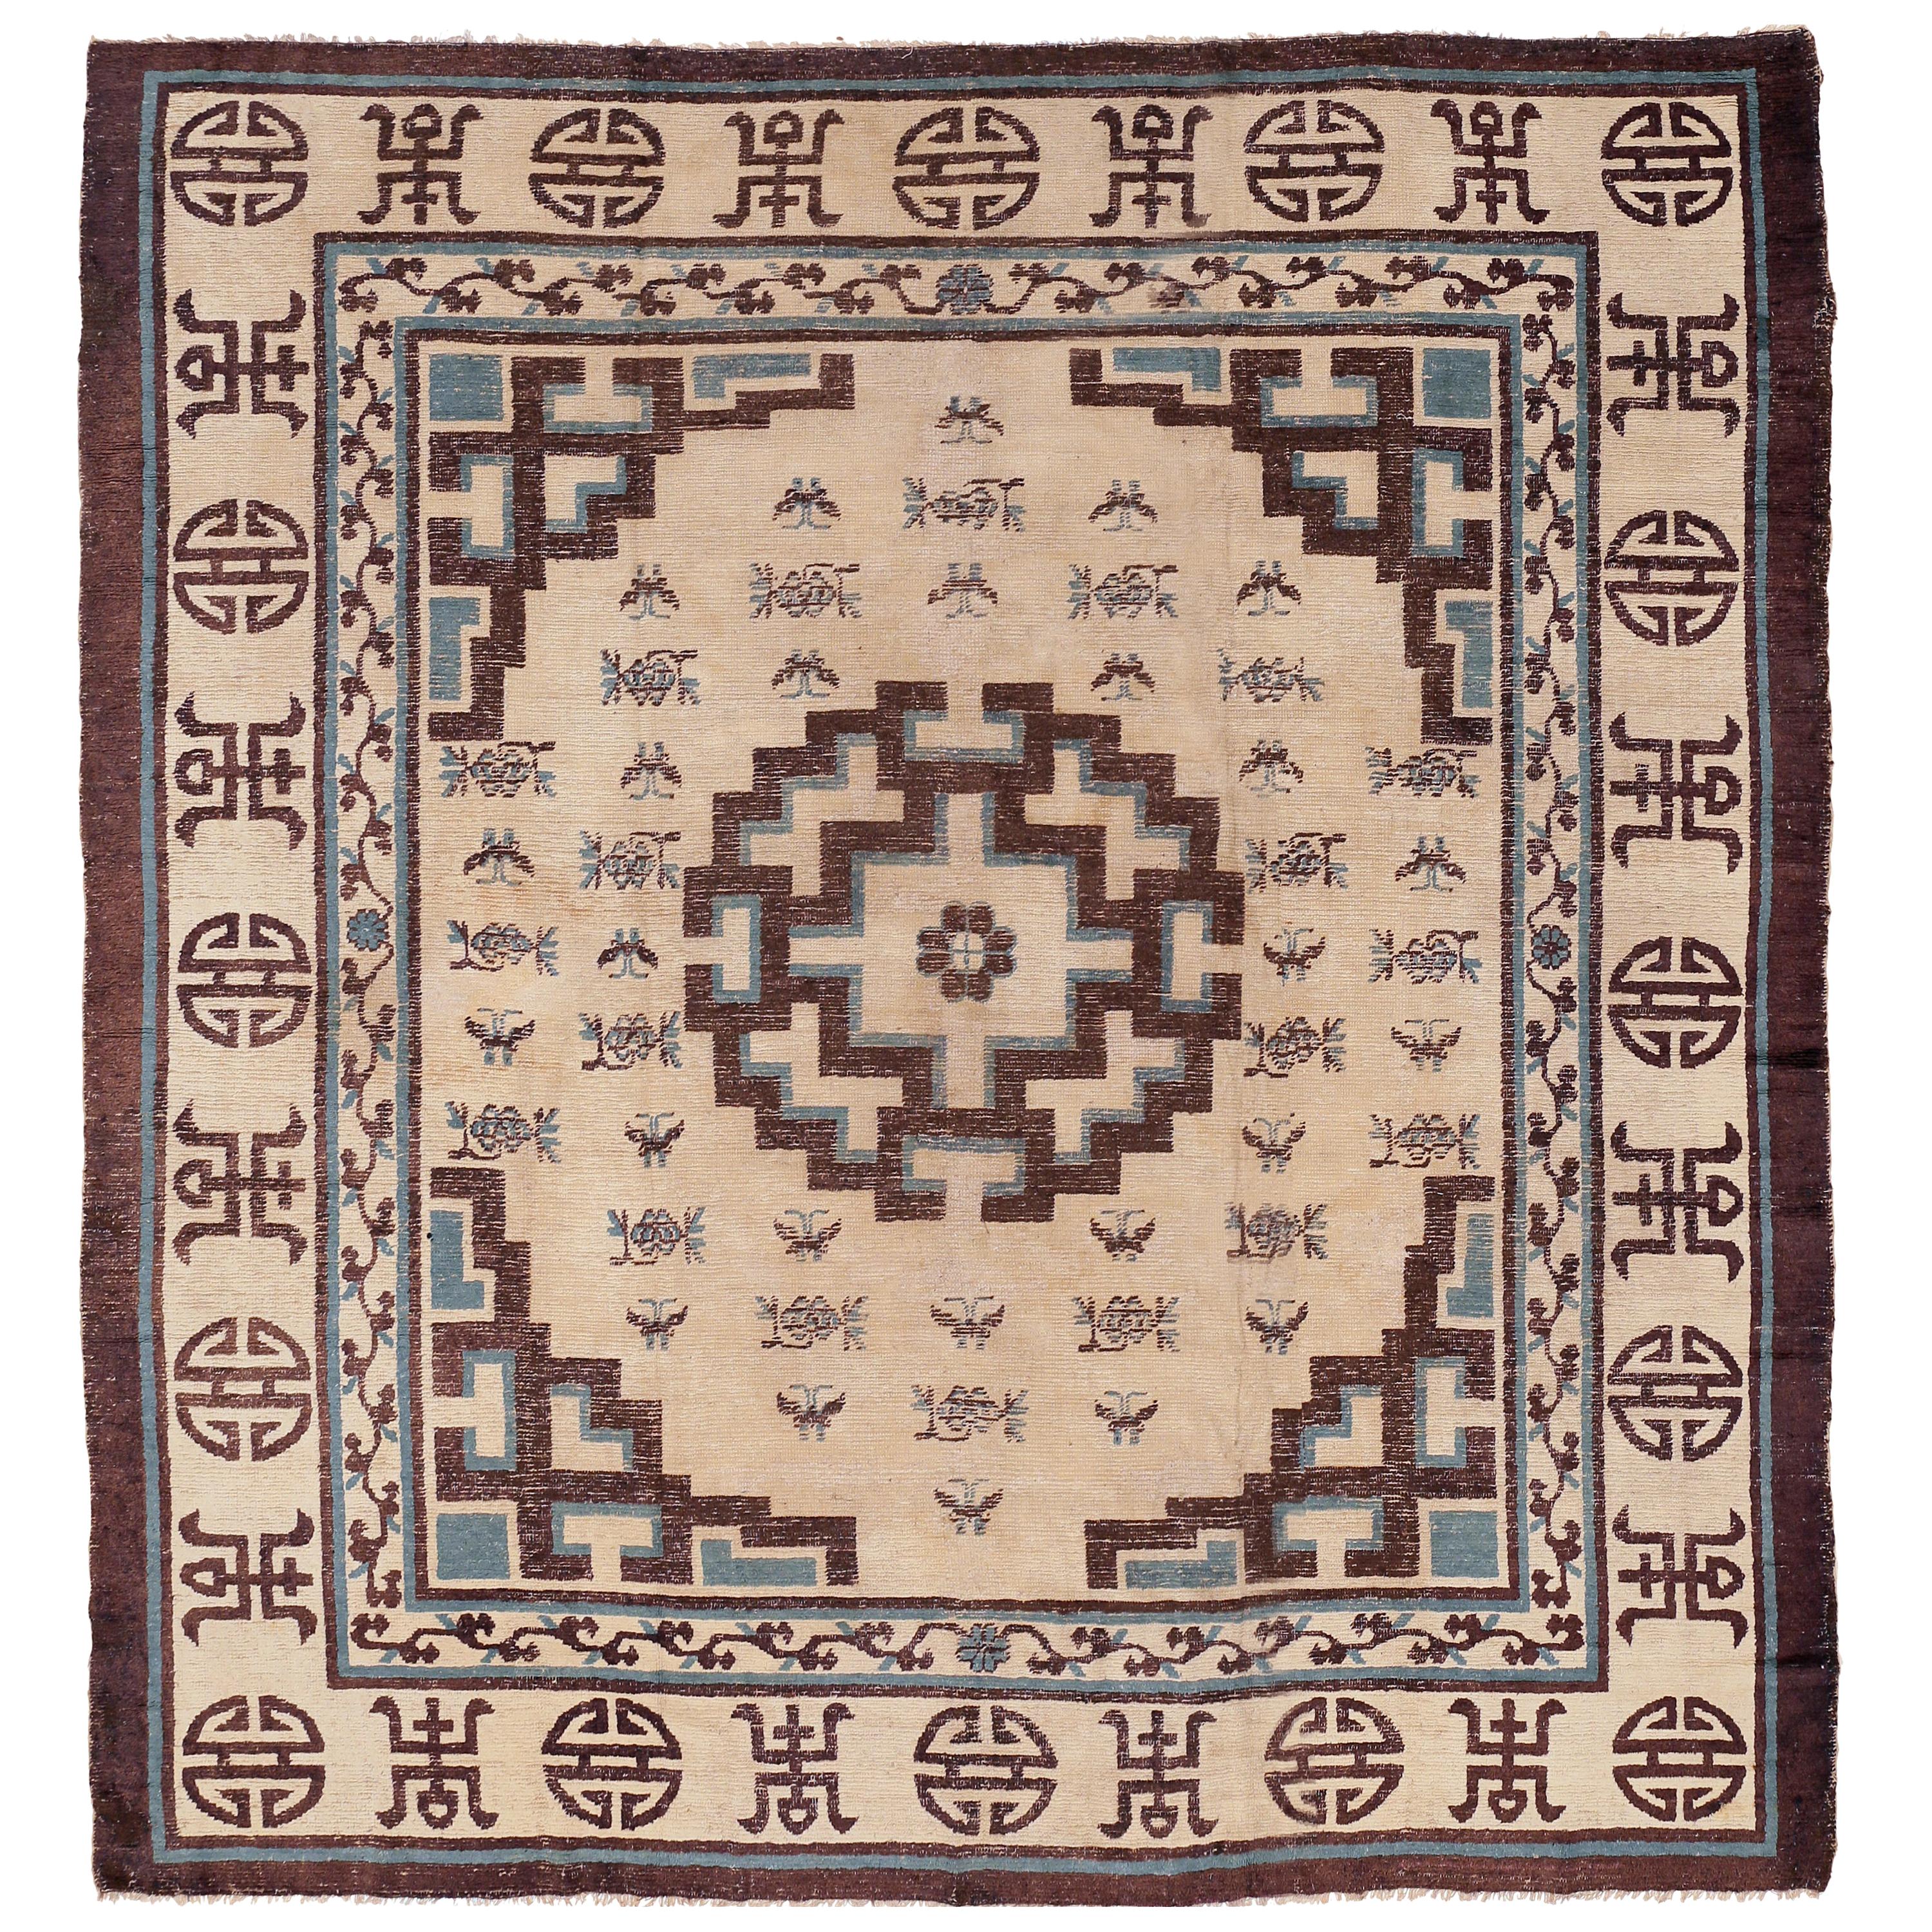 Seltener und antiker geometrischer elfenbeinfarbener mongolischer Teppich in Elfenbein